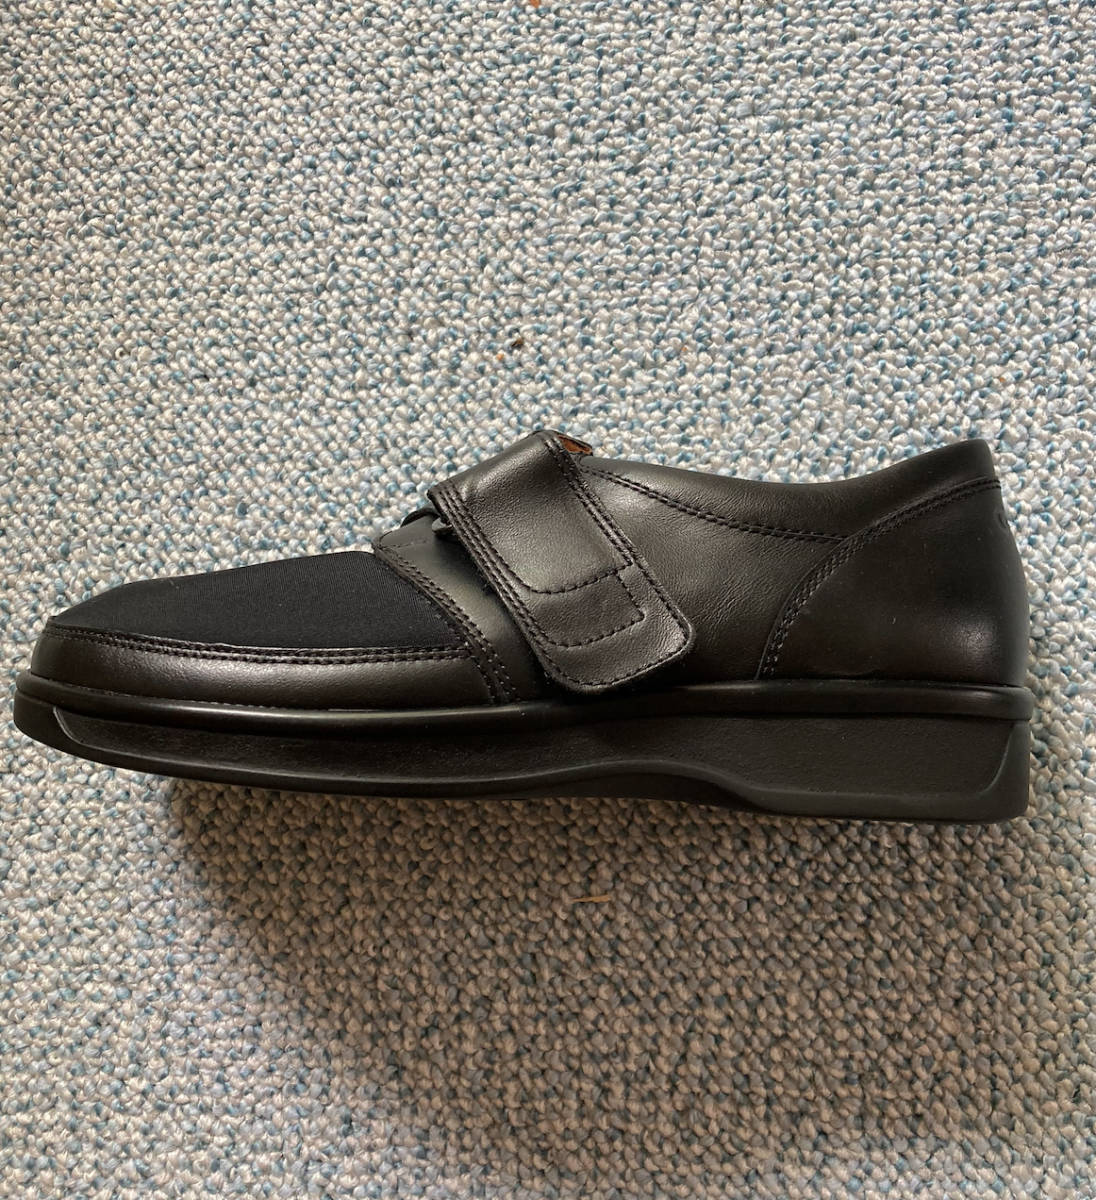 ガンター Ganter 靴 健康靴 23cm 未使用 自宅保管 - レディースシューズ